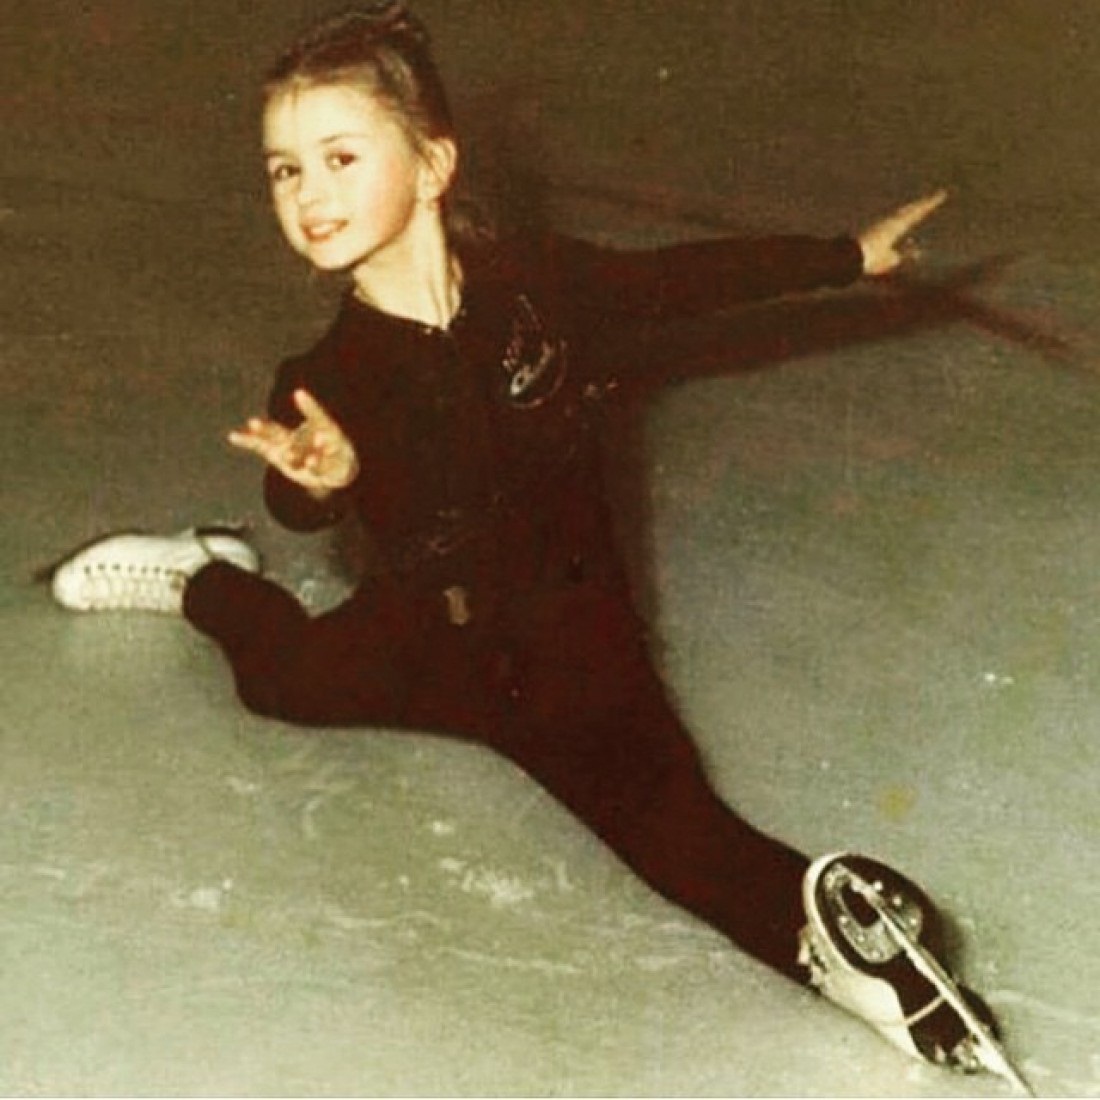 Анна семенович на коньках в юности фото